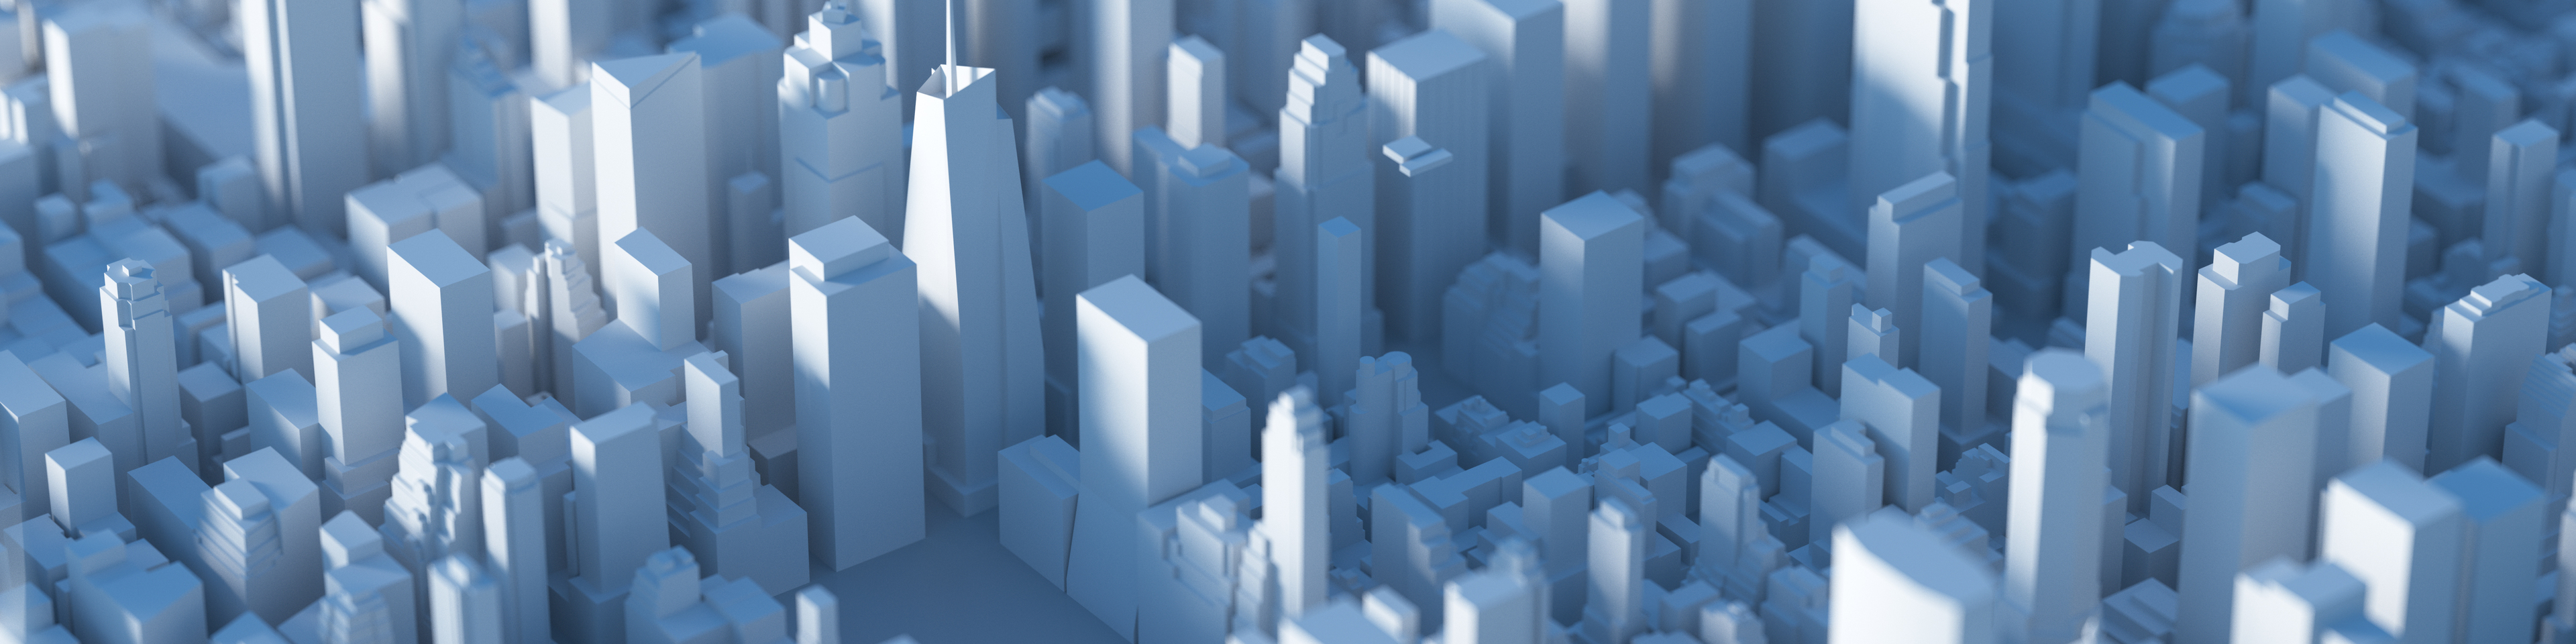 3D rendering digital city skyline